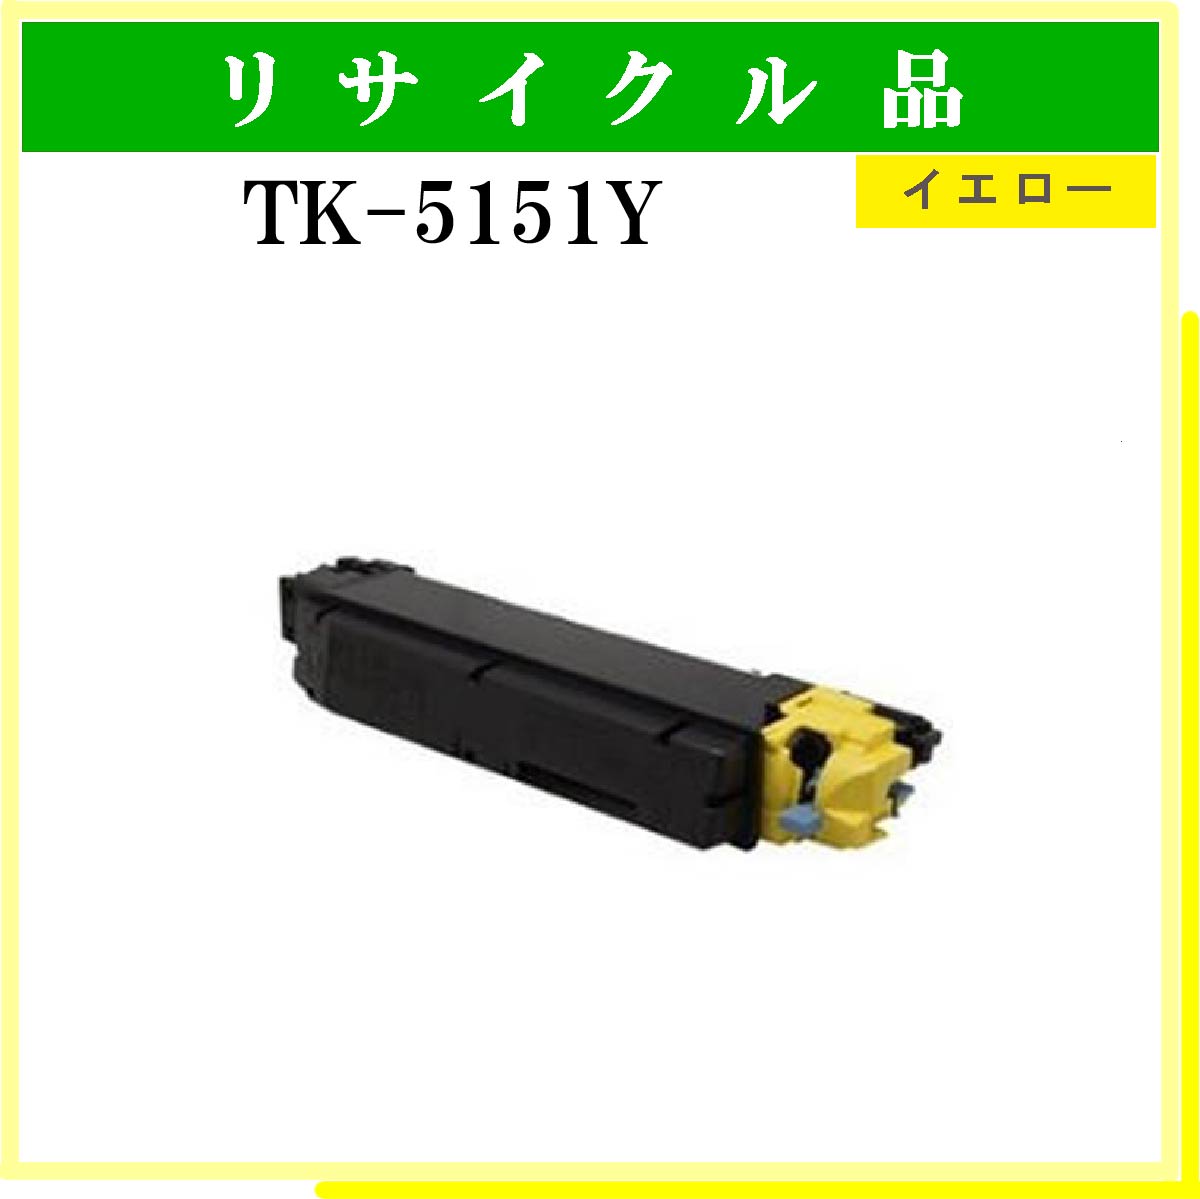 TK-5151Y